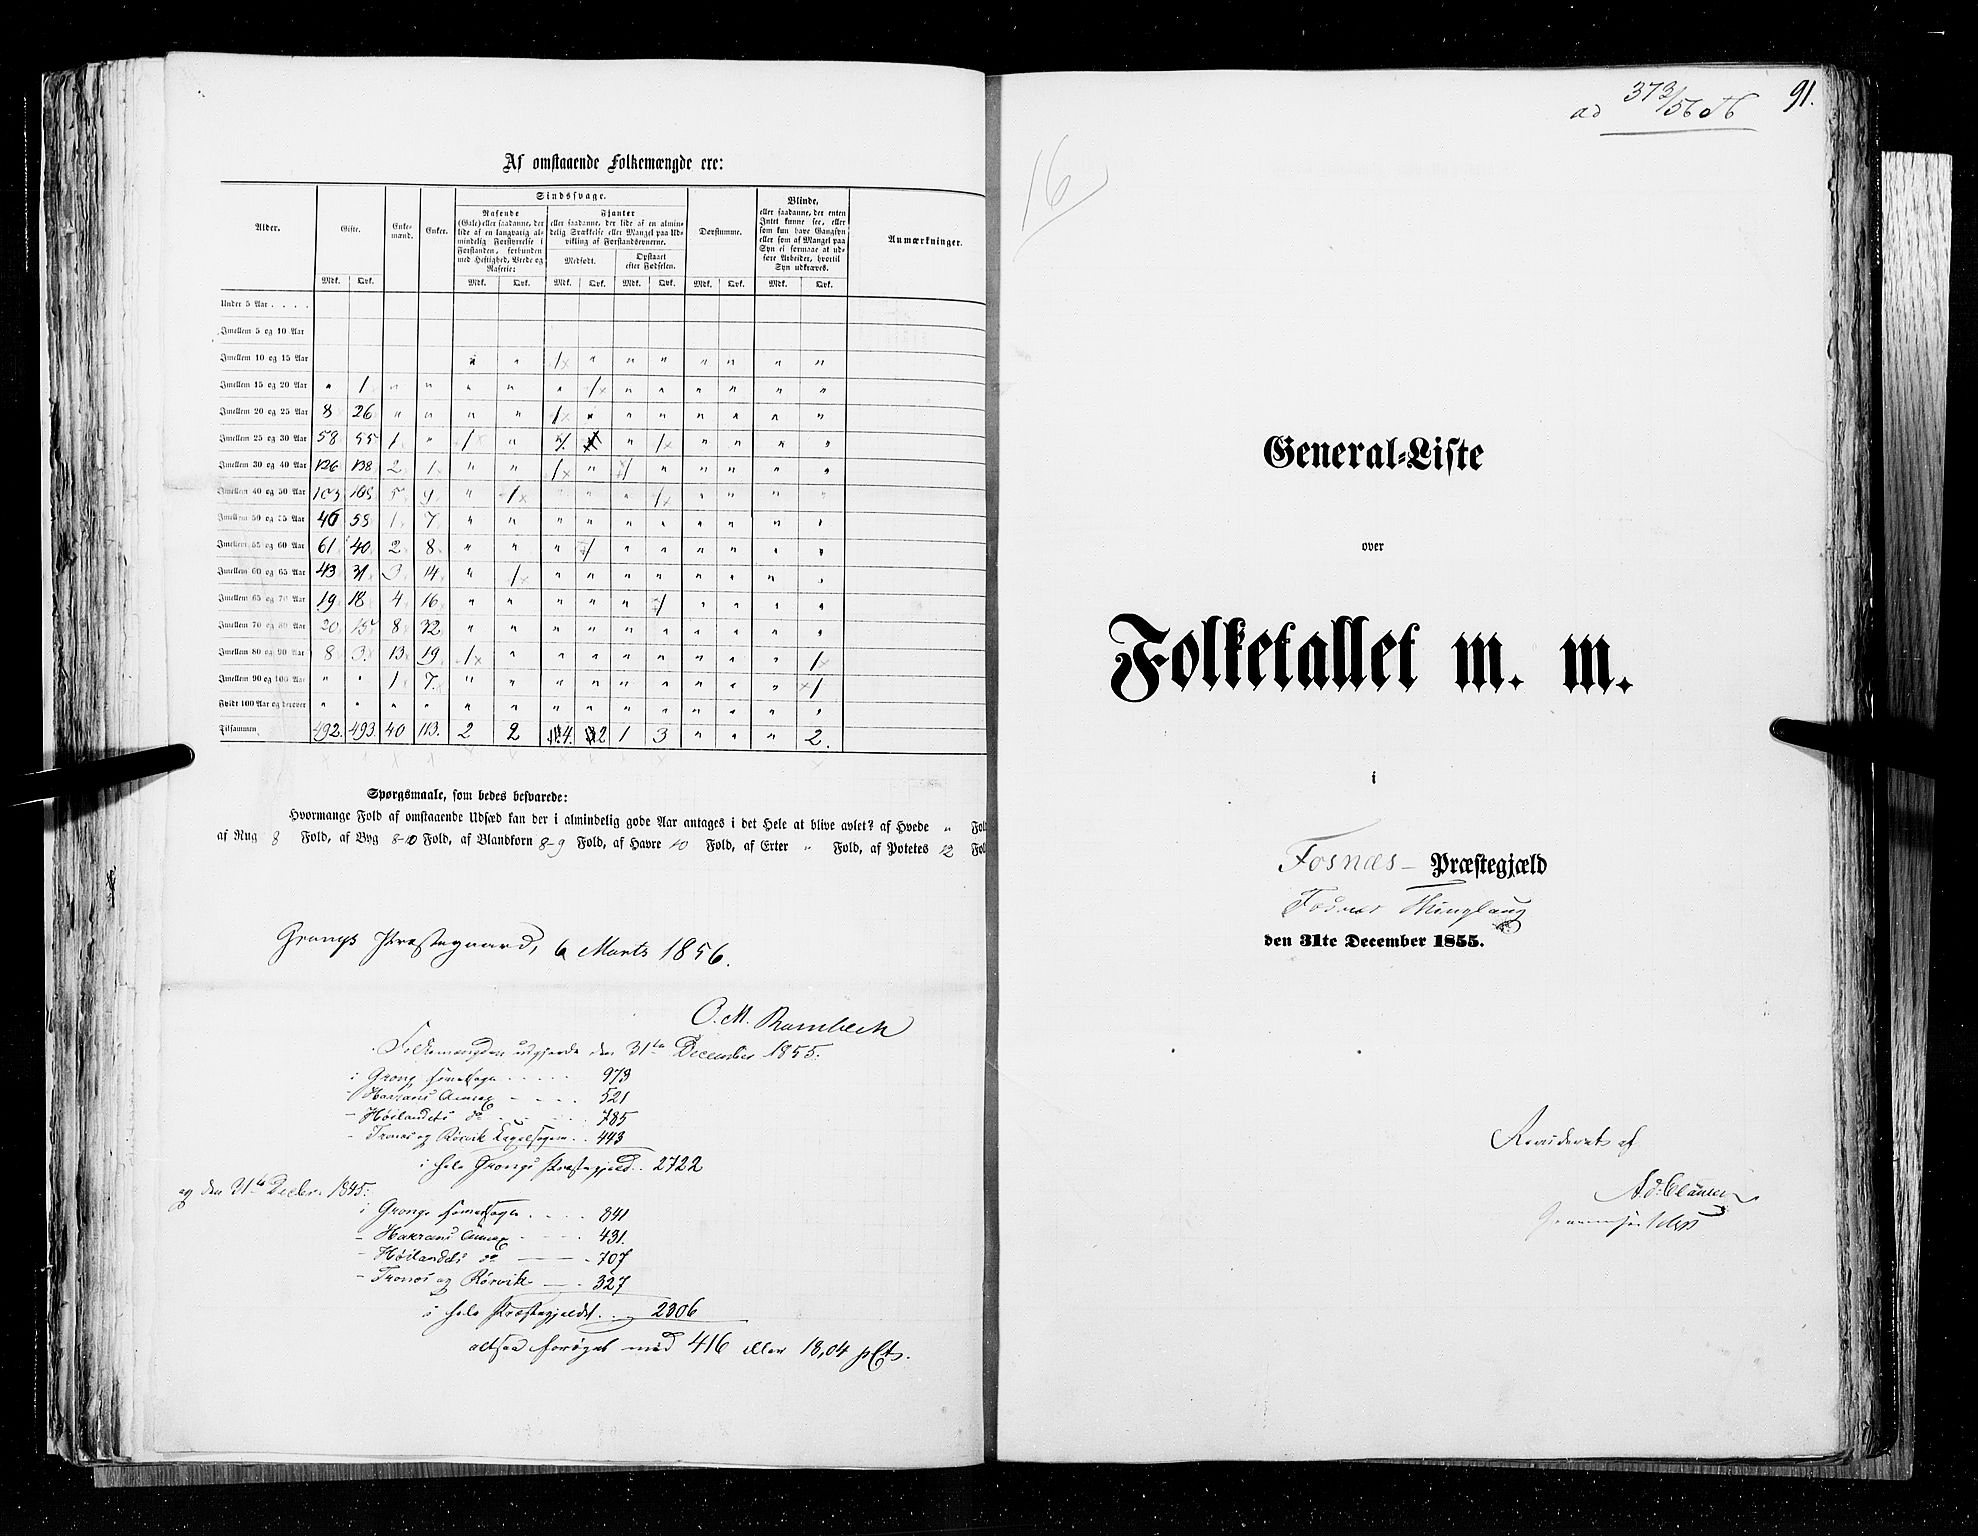 RA, Folketellingen 1855, bind 6A: Nordre Trondhjem amt og Nordland amt, 1855, s. 91